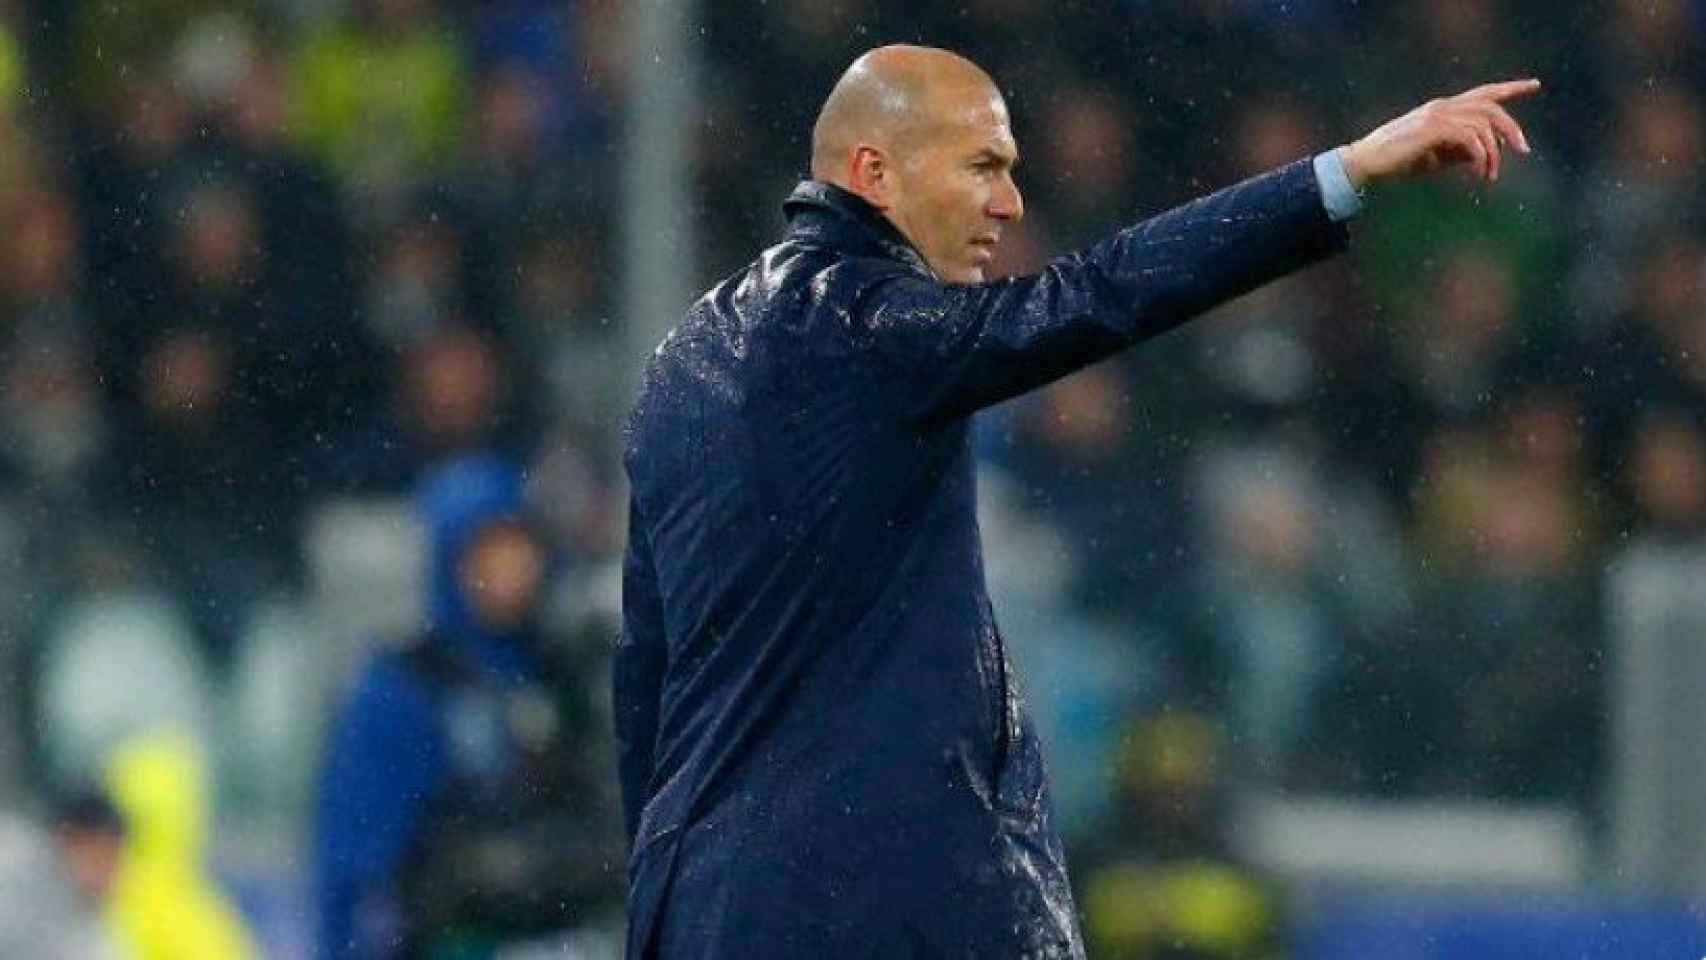 Zidane, en el partido contra la Juventus